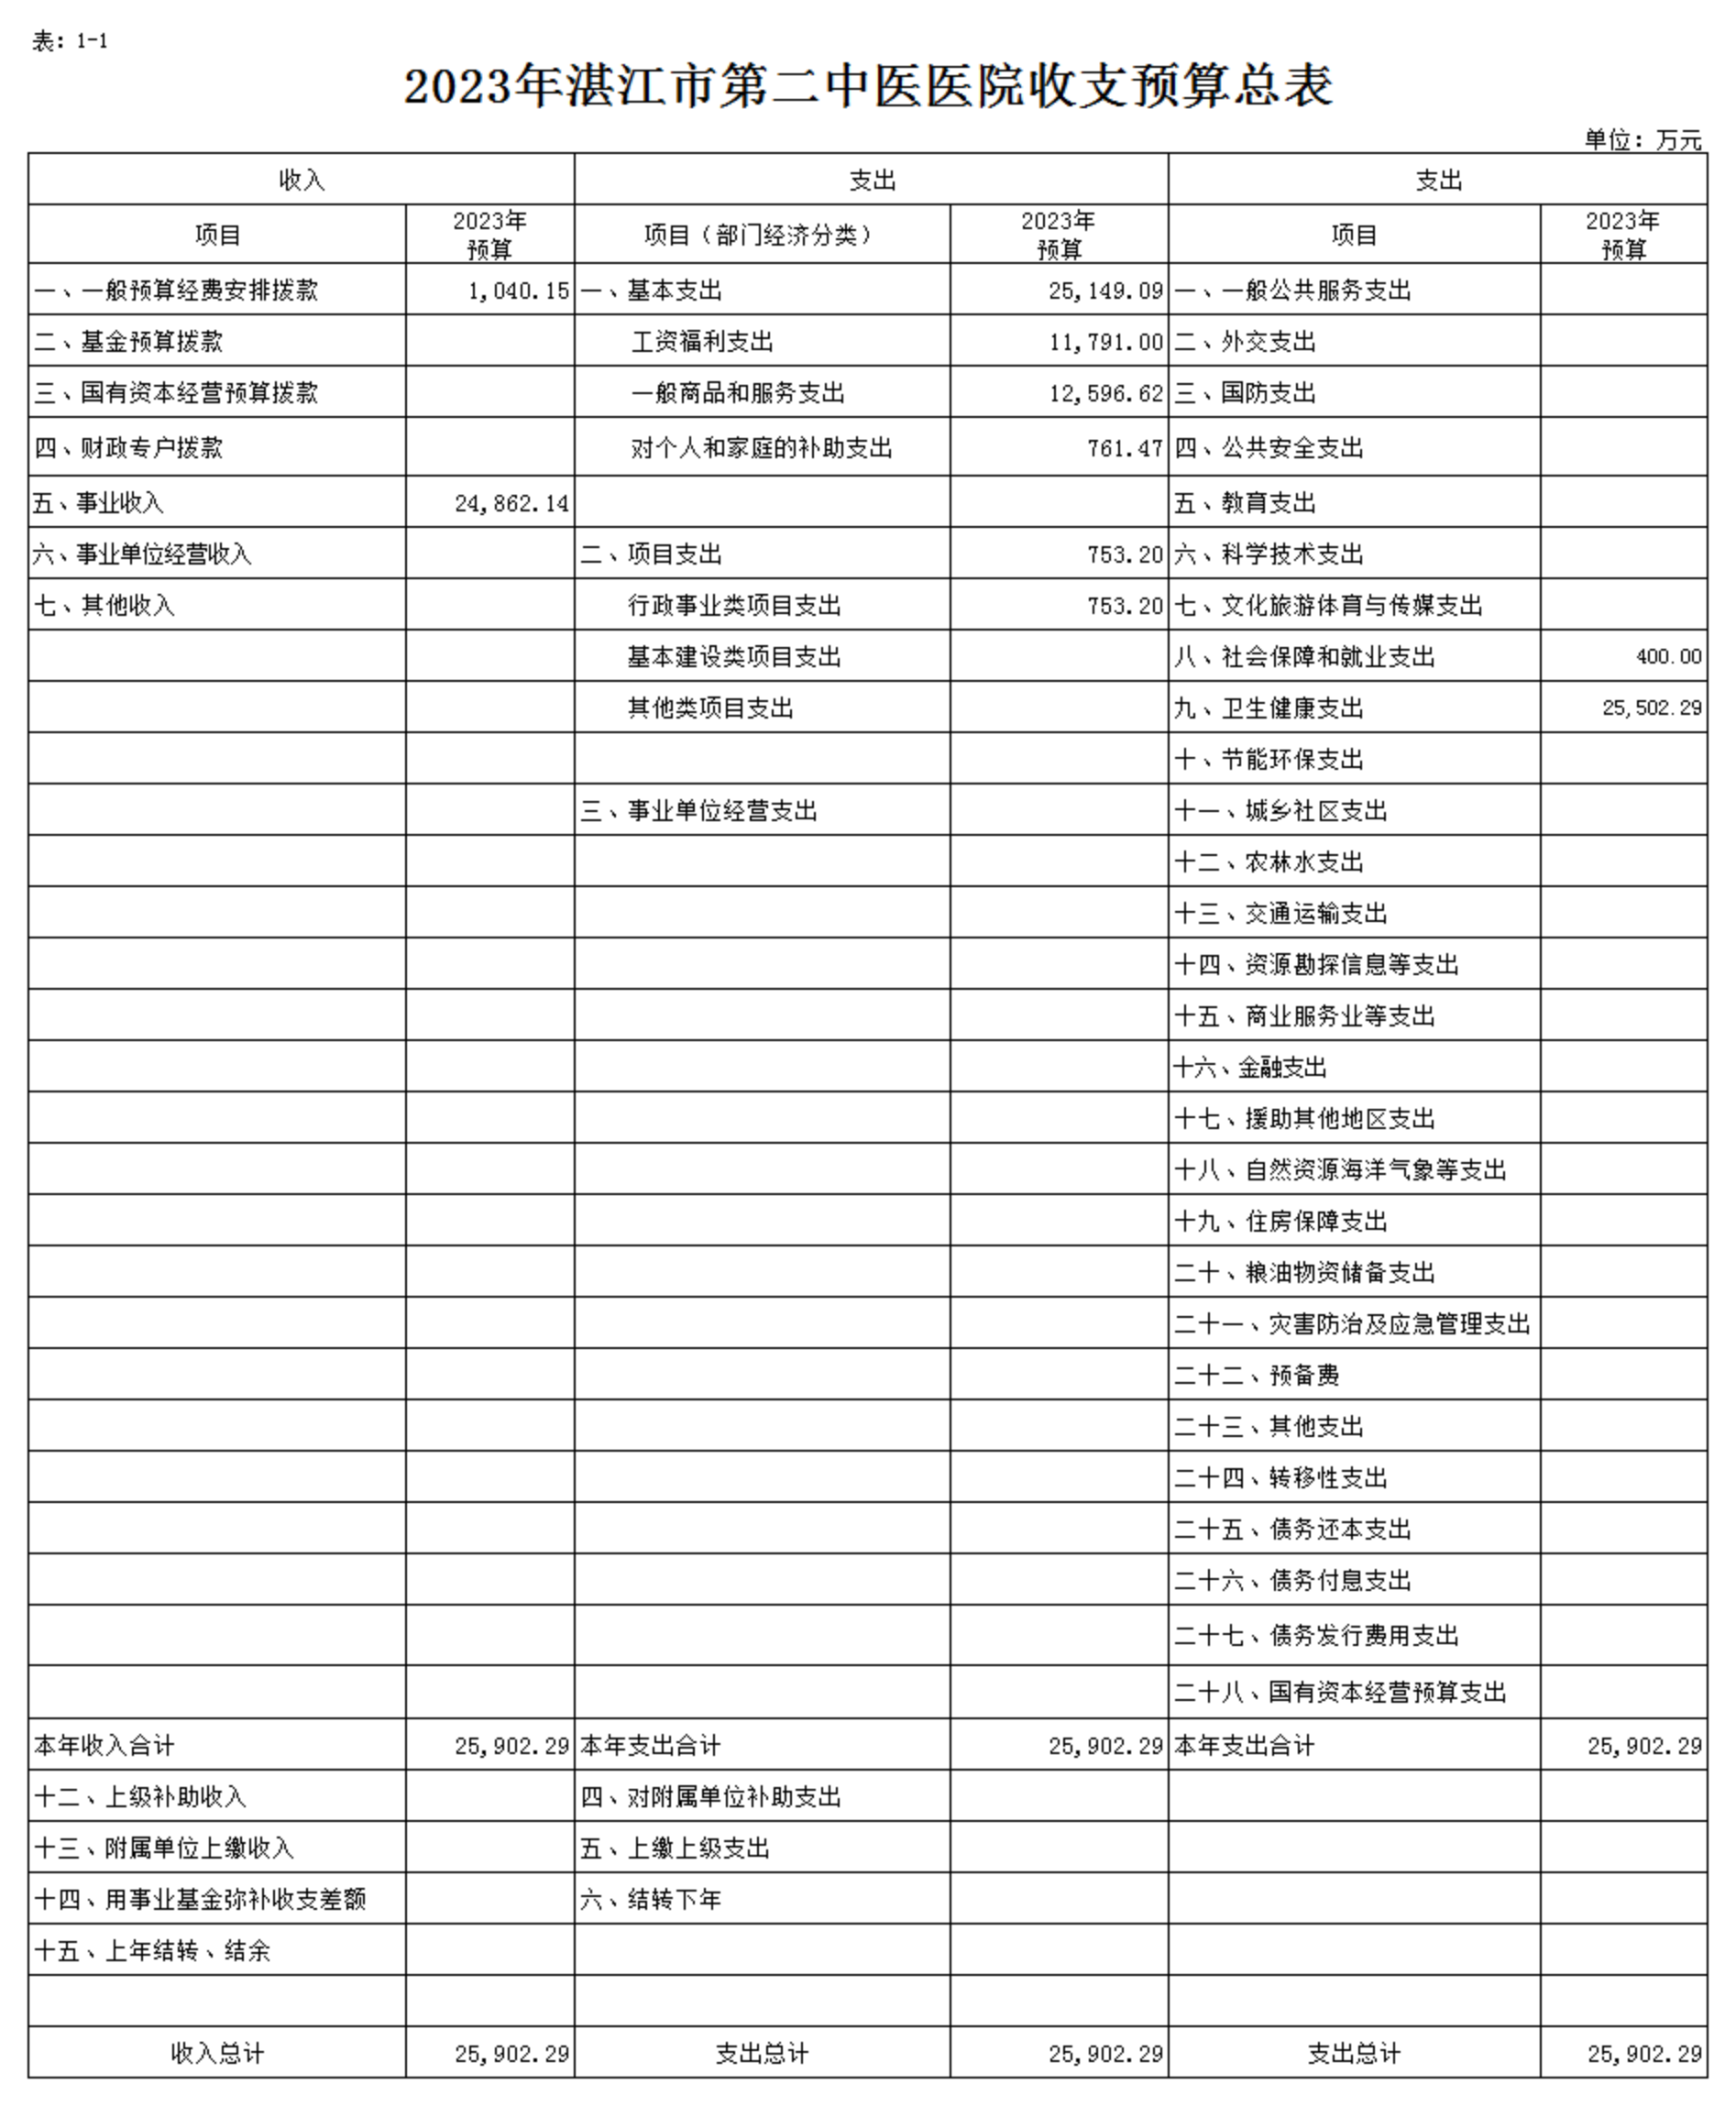 hjc888黄金城官网入口2023年预算编报说明-官网用_02.png